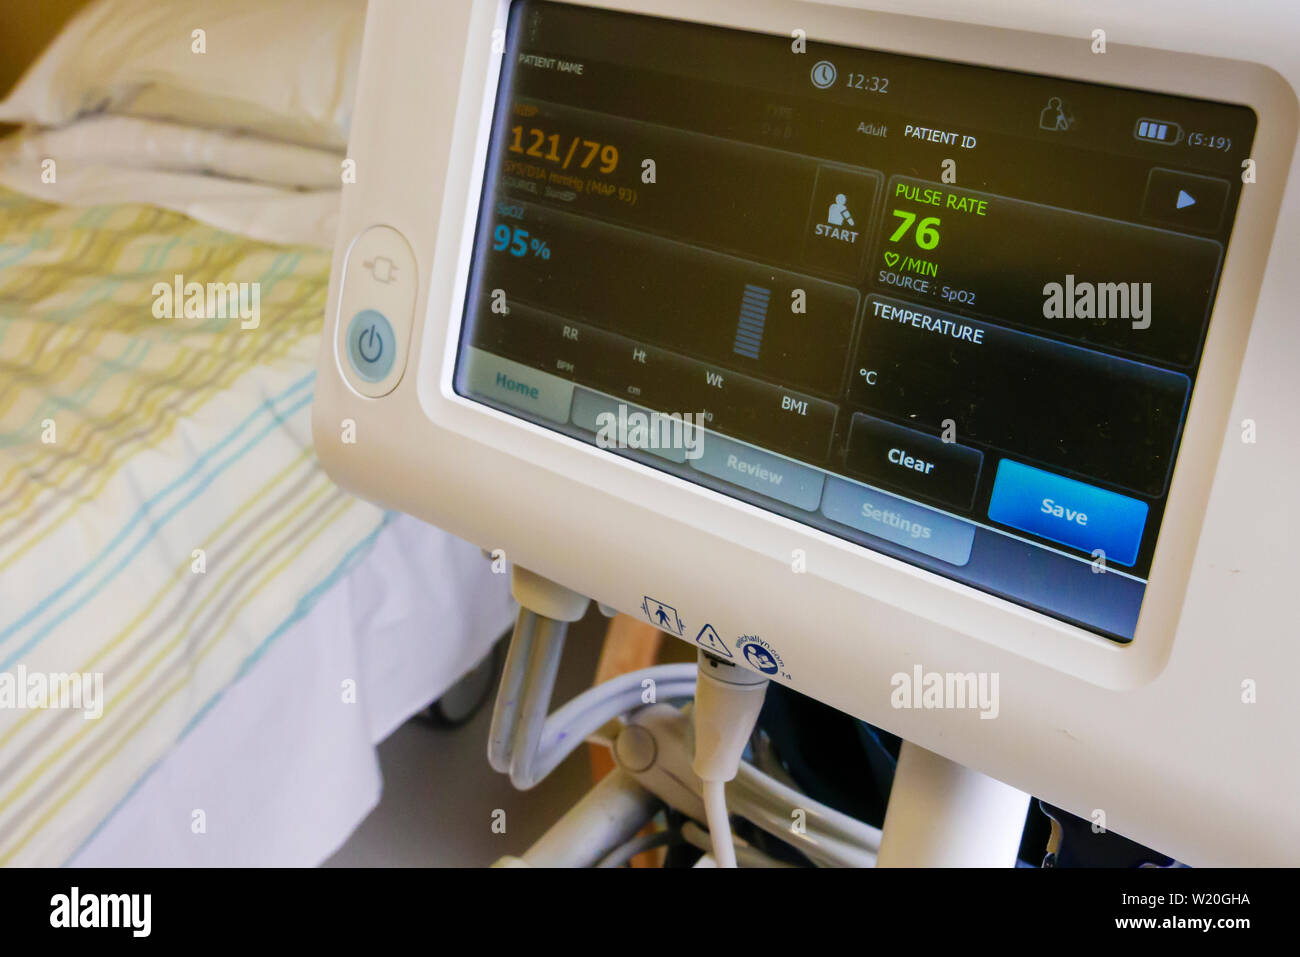 WelchAllyn Blutdruckmessgerät in einem Krankenhaus zeigt einen normalen  Blutdruck von 121/79, und ein Blut Sättigung von 95 Stockfotografie - Alamy